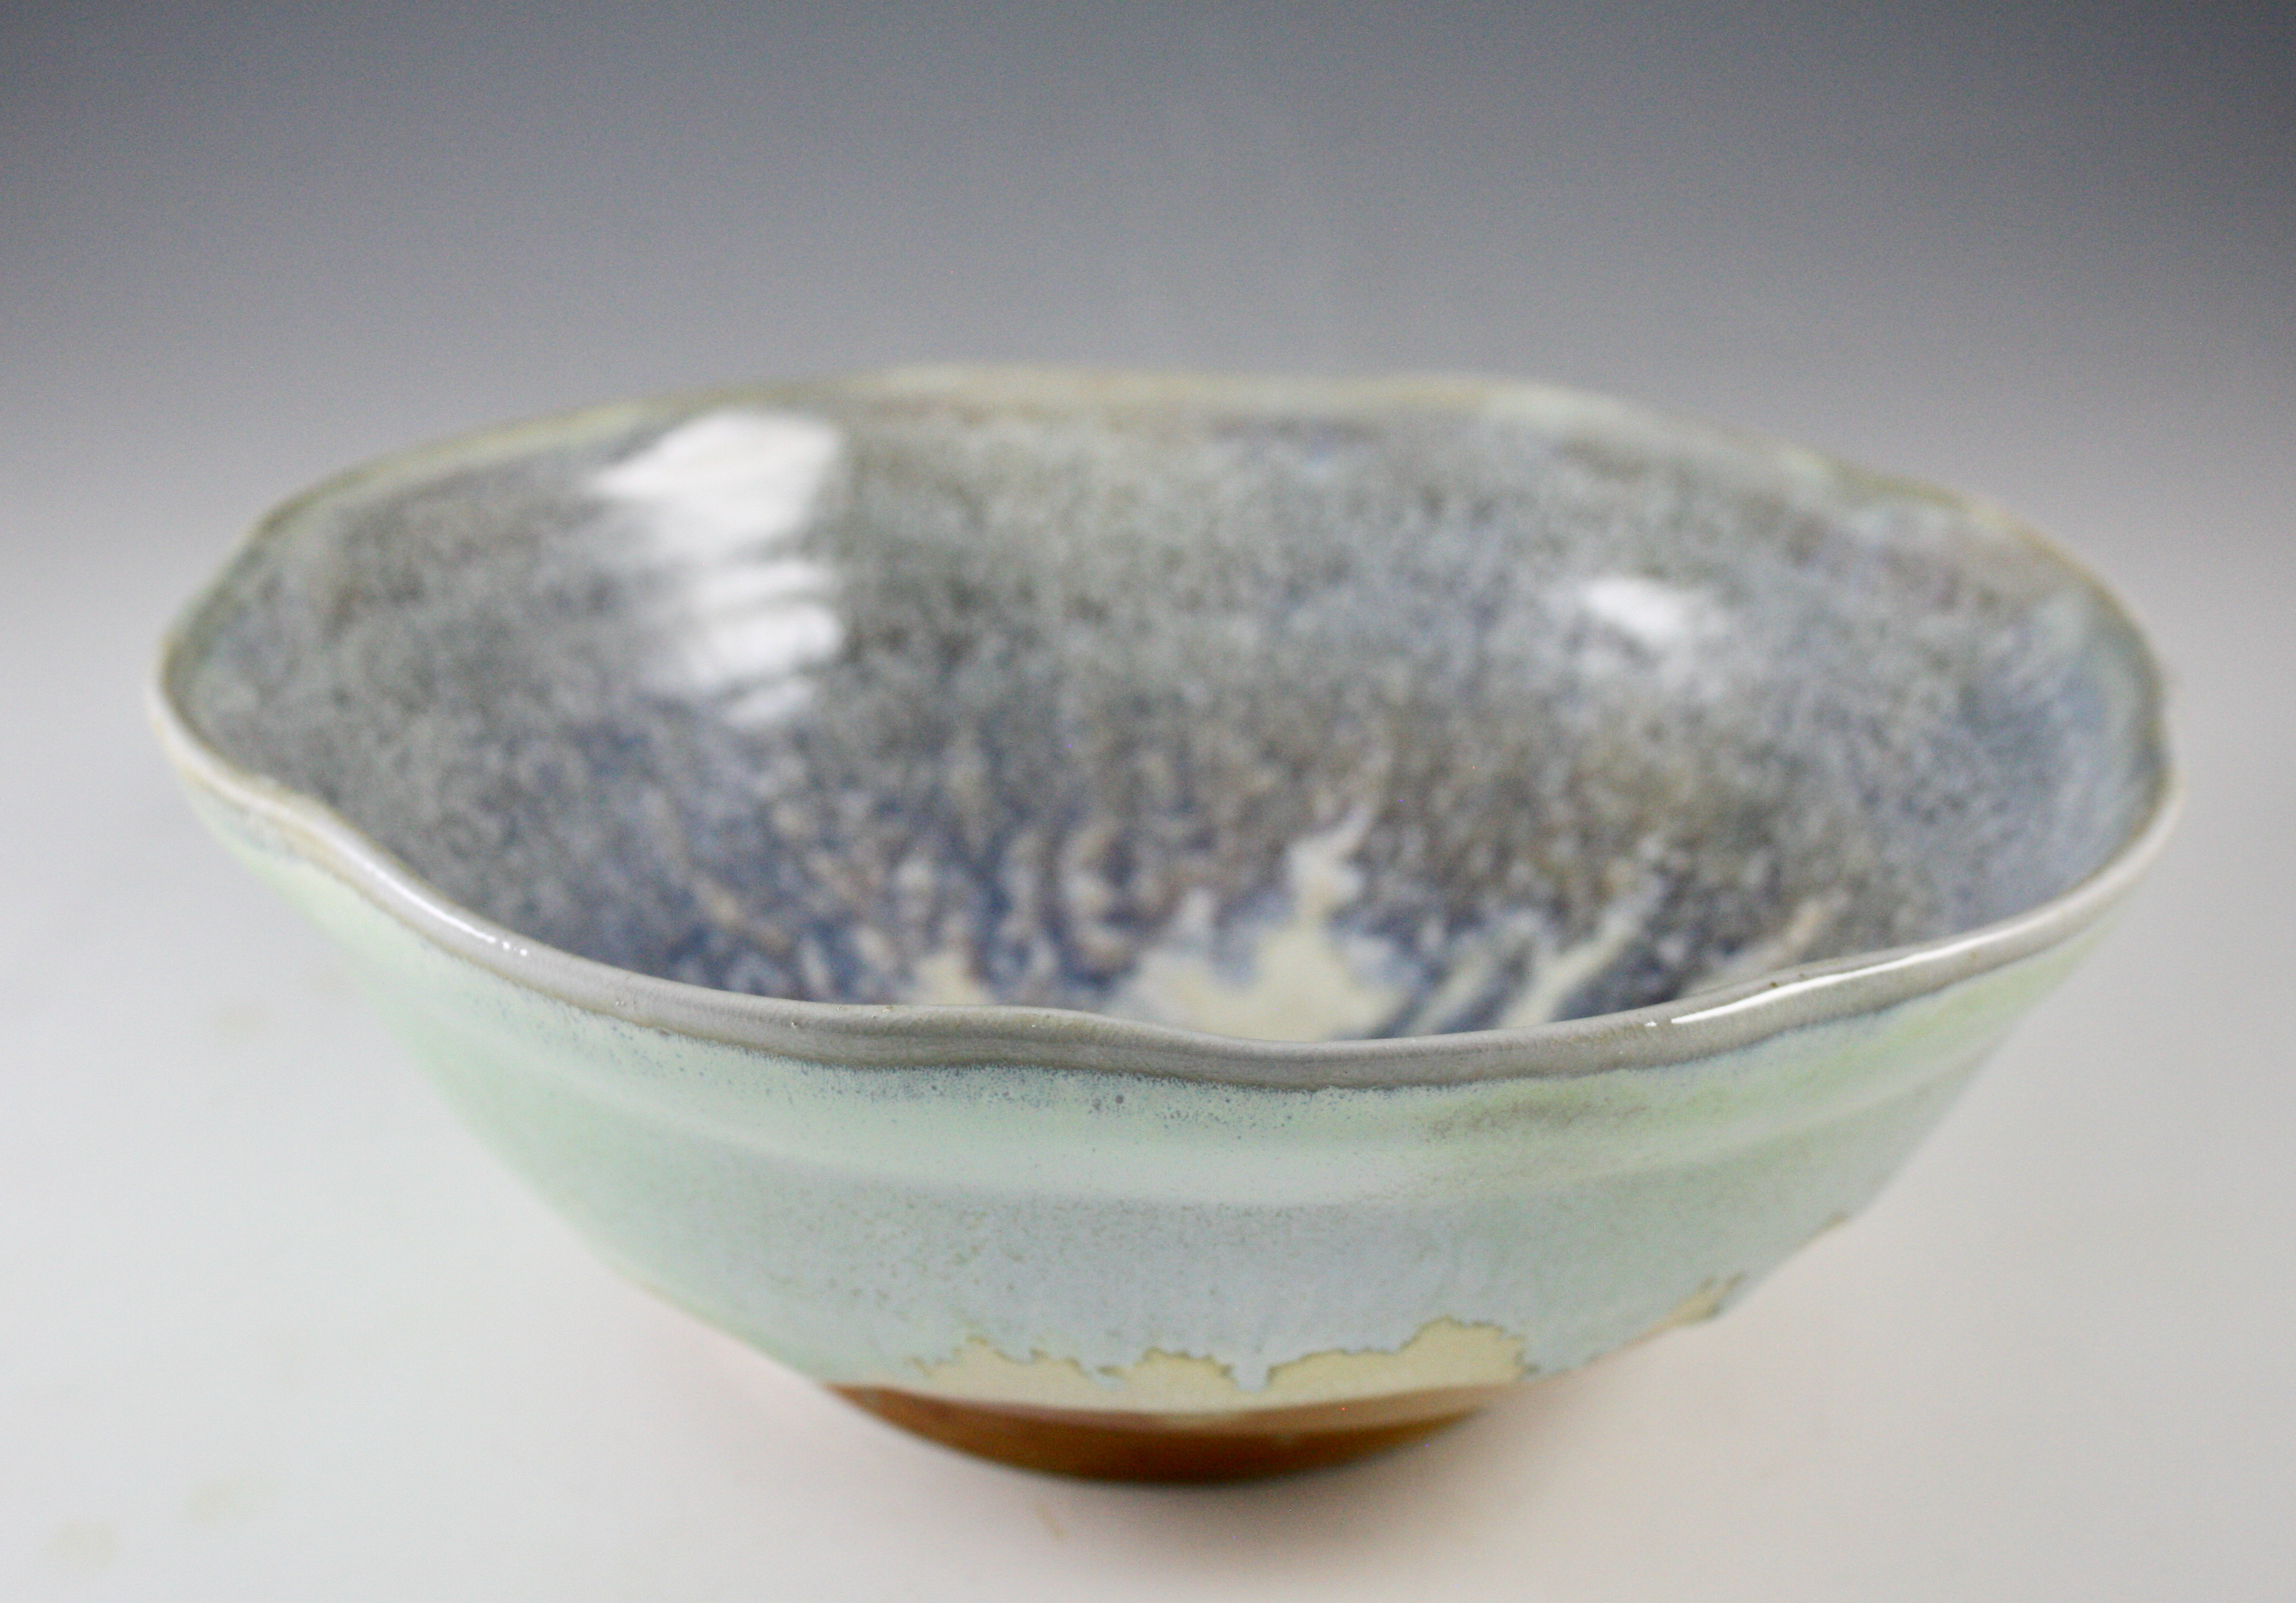 Wavy Rim Bowl with Blue-Green Glazes 21-310